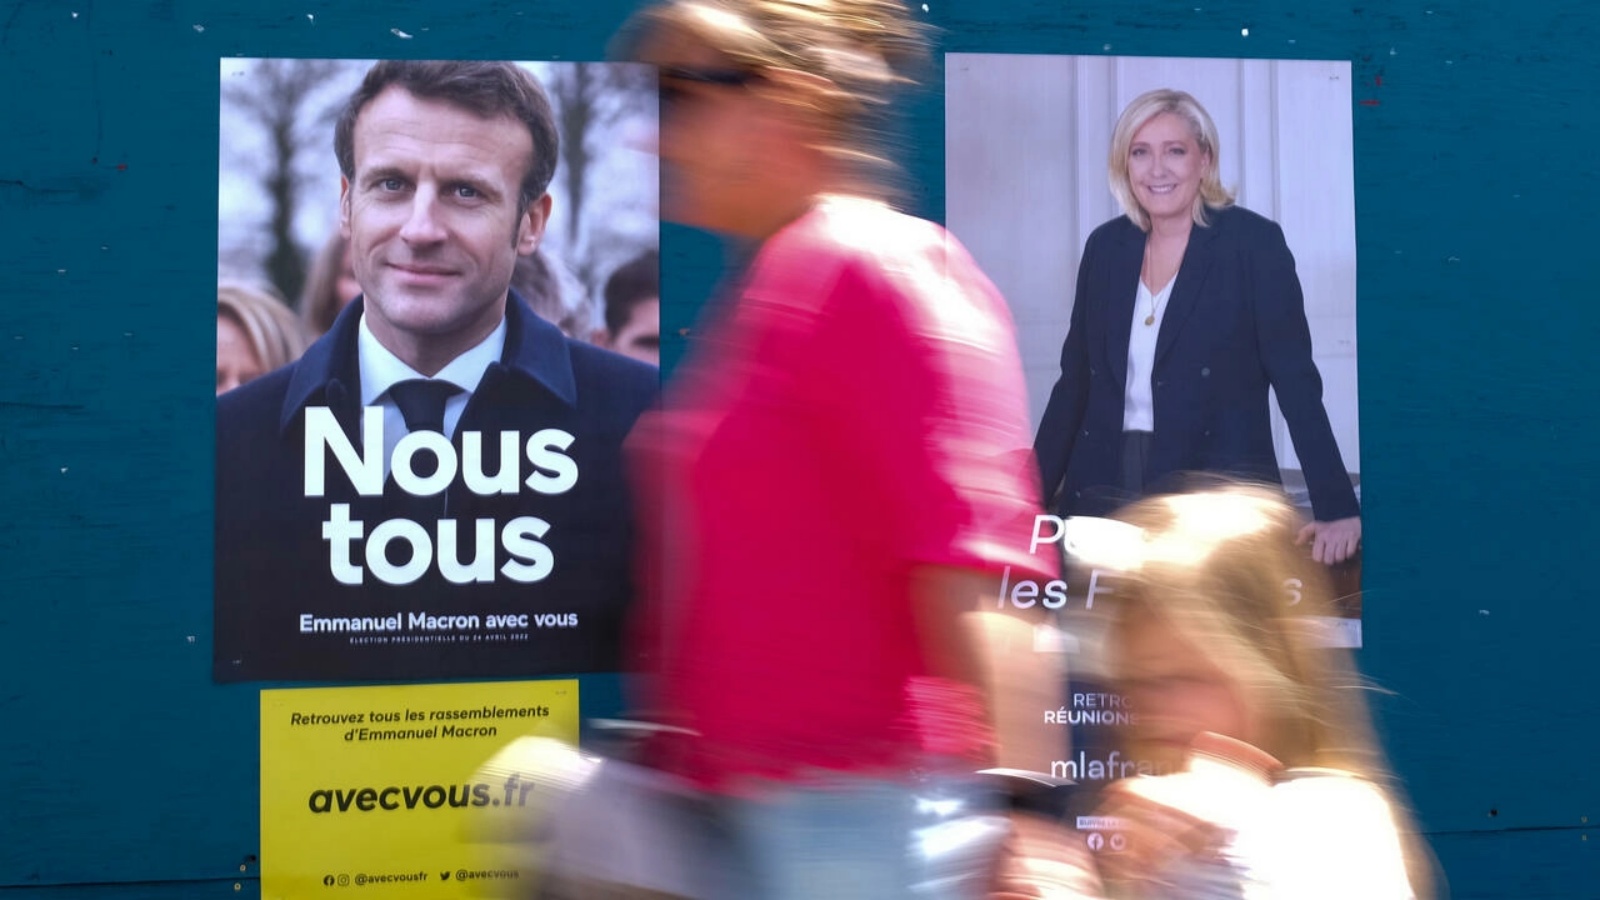 فرنسيون يصطفون للإدلاء بأصواتهم في الدورة الثانية للانتخابات الرئاسية الفرنسية، في مركز اقتراع في بوربانك بولاية كاليفورنيا الأميركية في 23 أبريل 2022